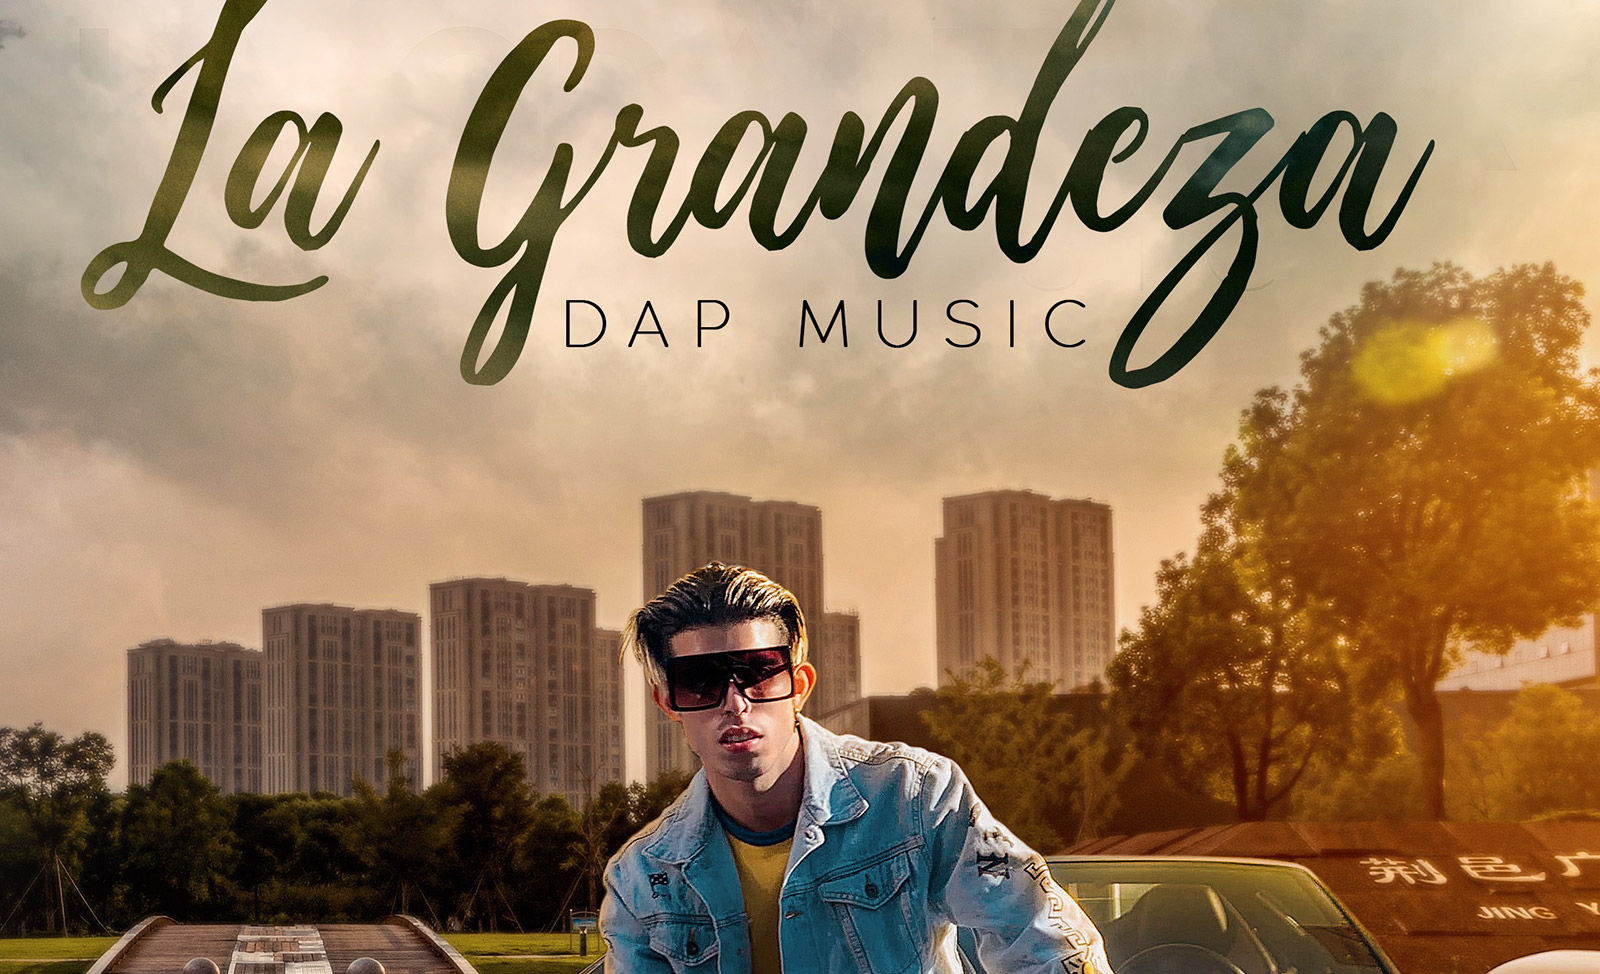 El cantante urbano DAP MUSIC lanza su nuevo disco titulado: “La Grandeza”.